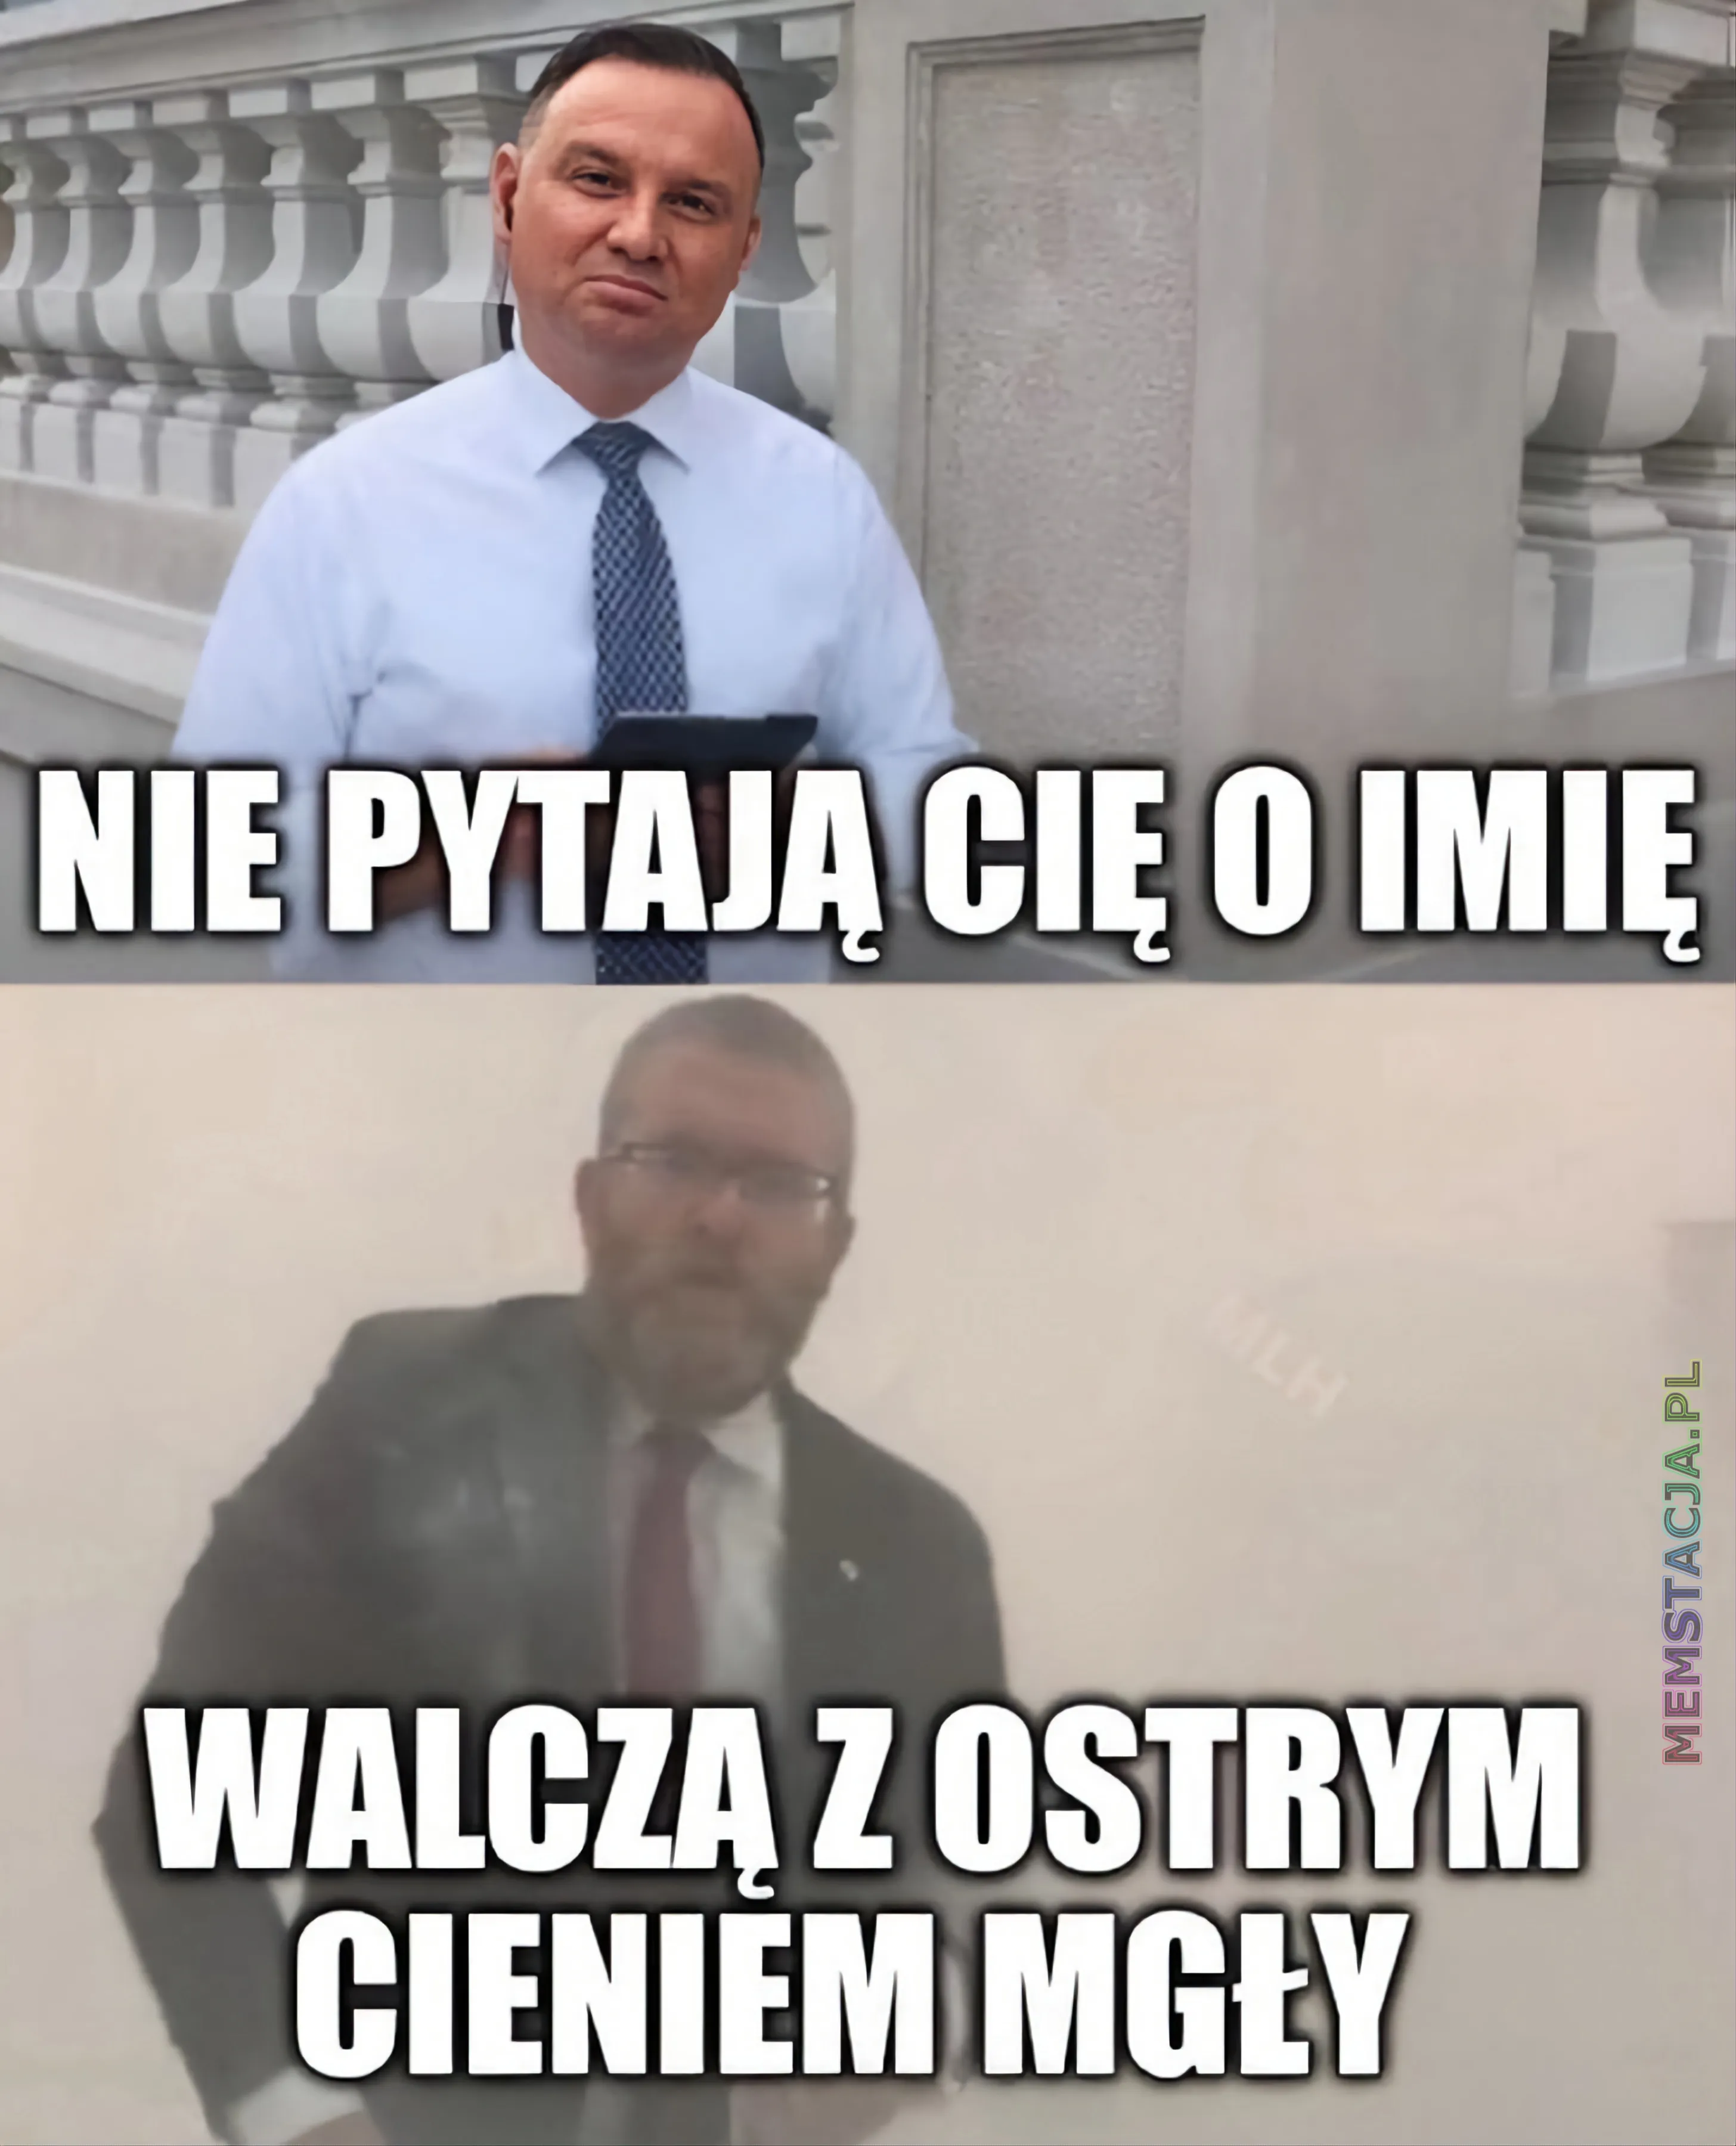 Mem przedstawiający Prezydenta Andrzeja Dudę i Grzegorza Brauna: 'Nie pytają Cię o imię, walczą z ostrym cieniem mgły'